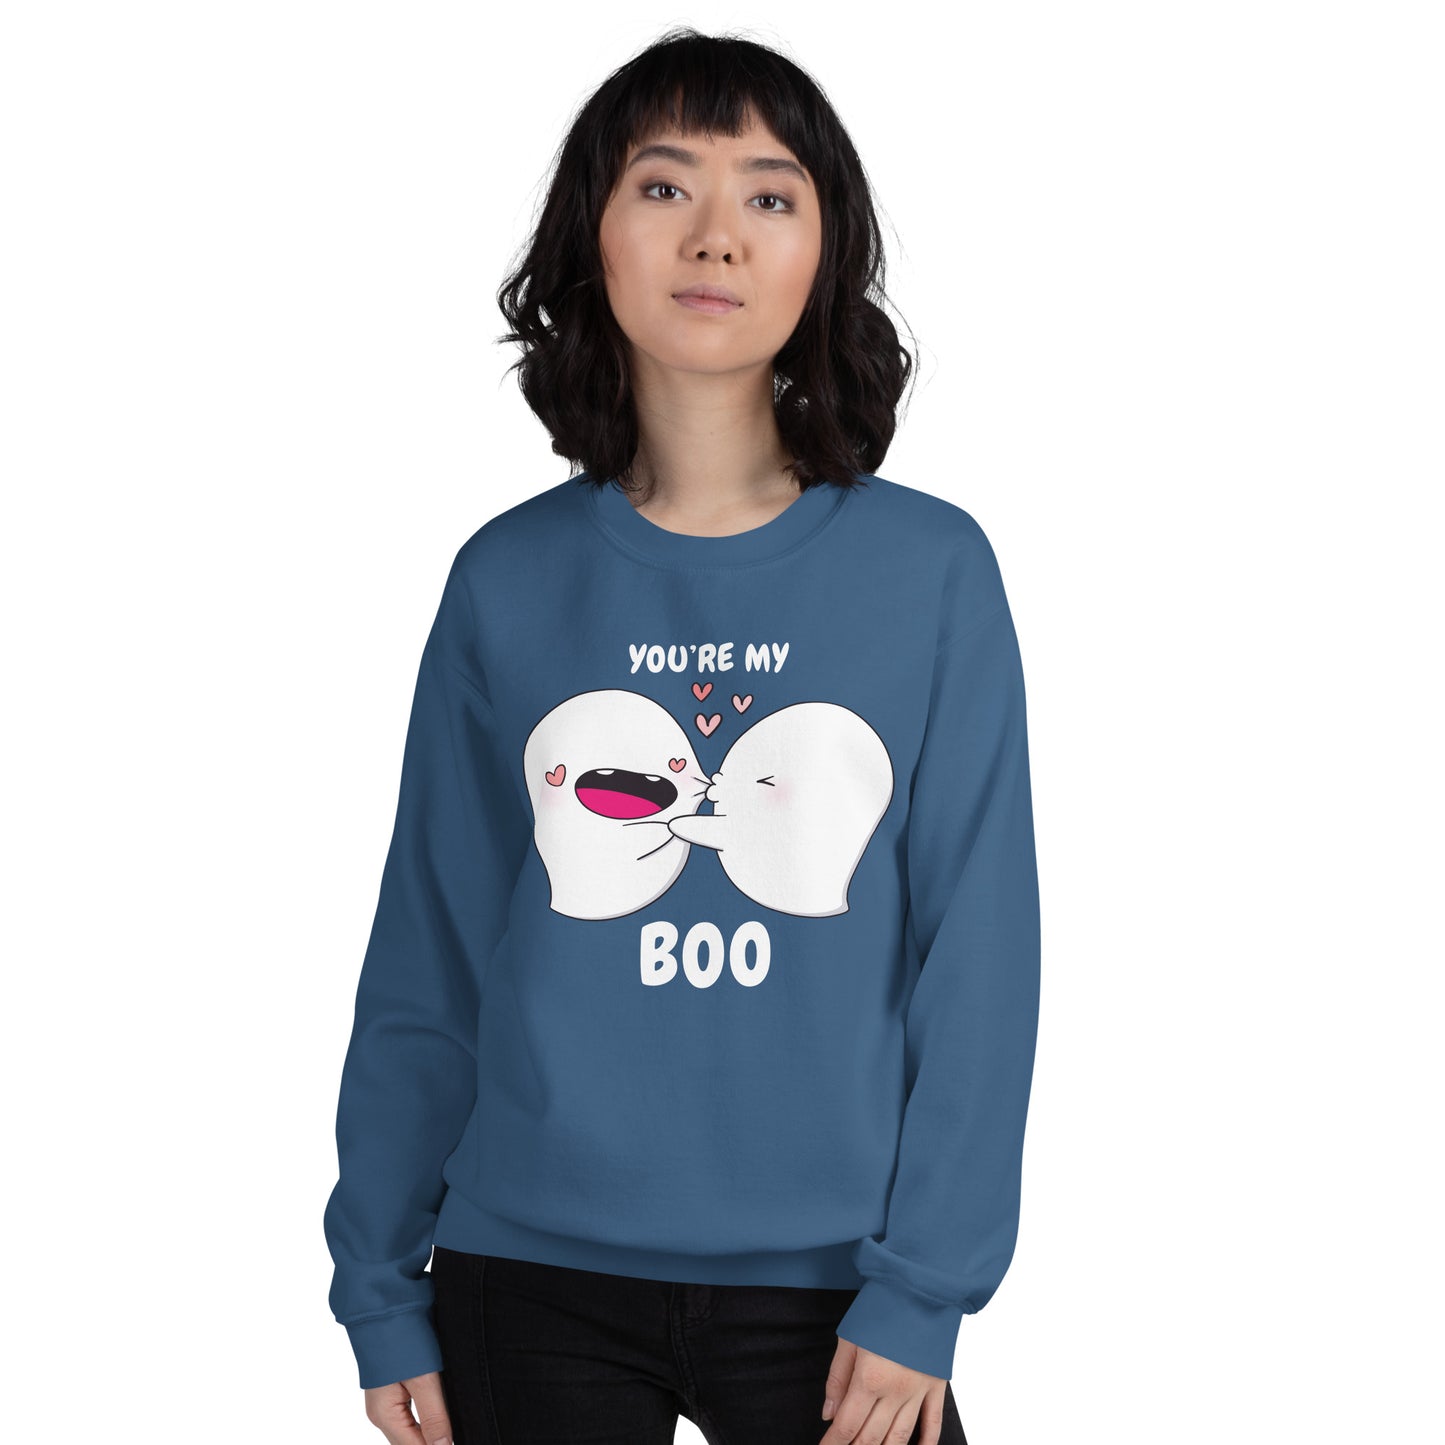 You're my boo - Unisex Sweatshirt